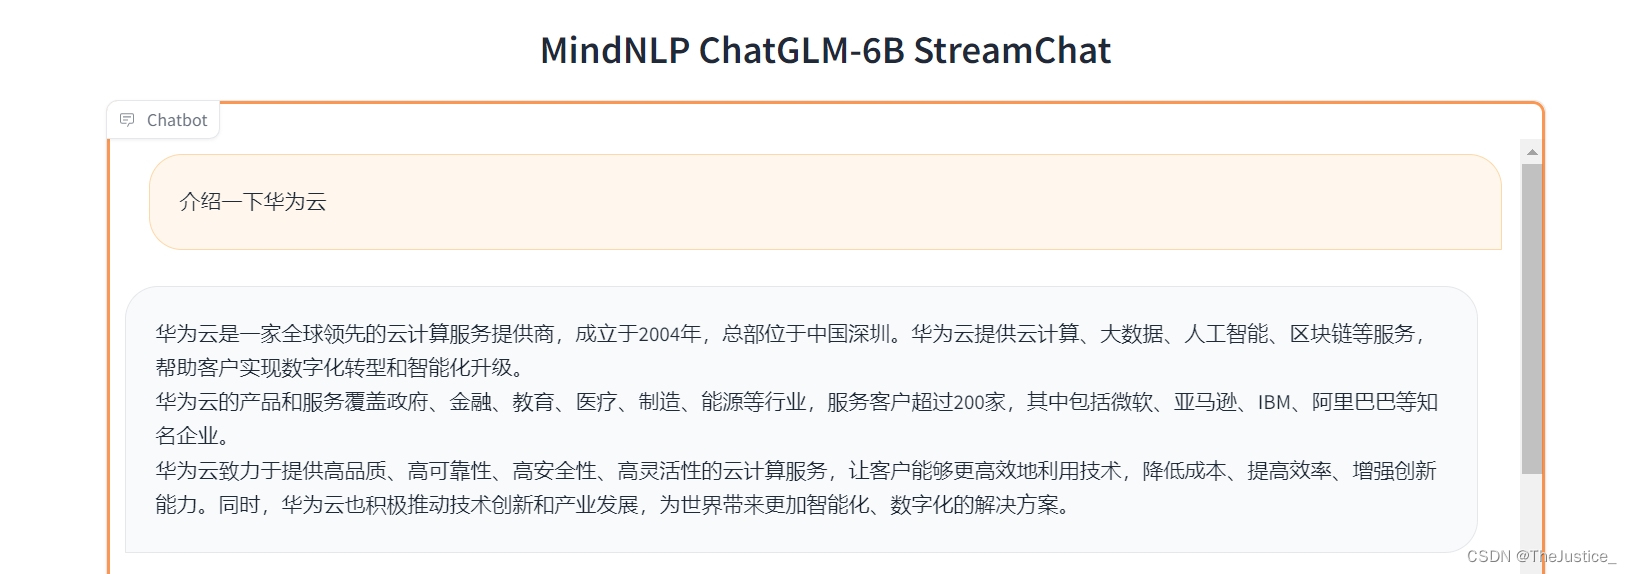 华为云开发者社区活动-基于MindNLP的ChatGLM-6B聊天机器人体验